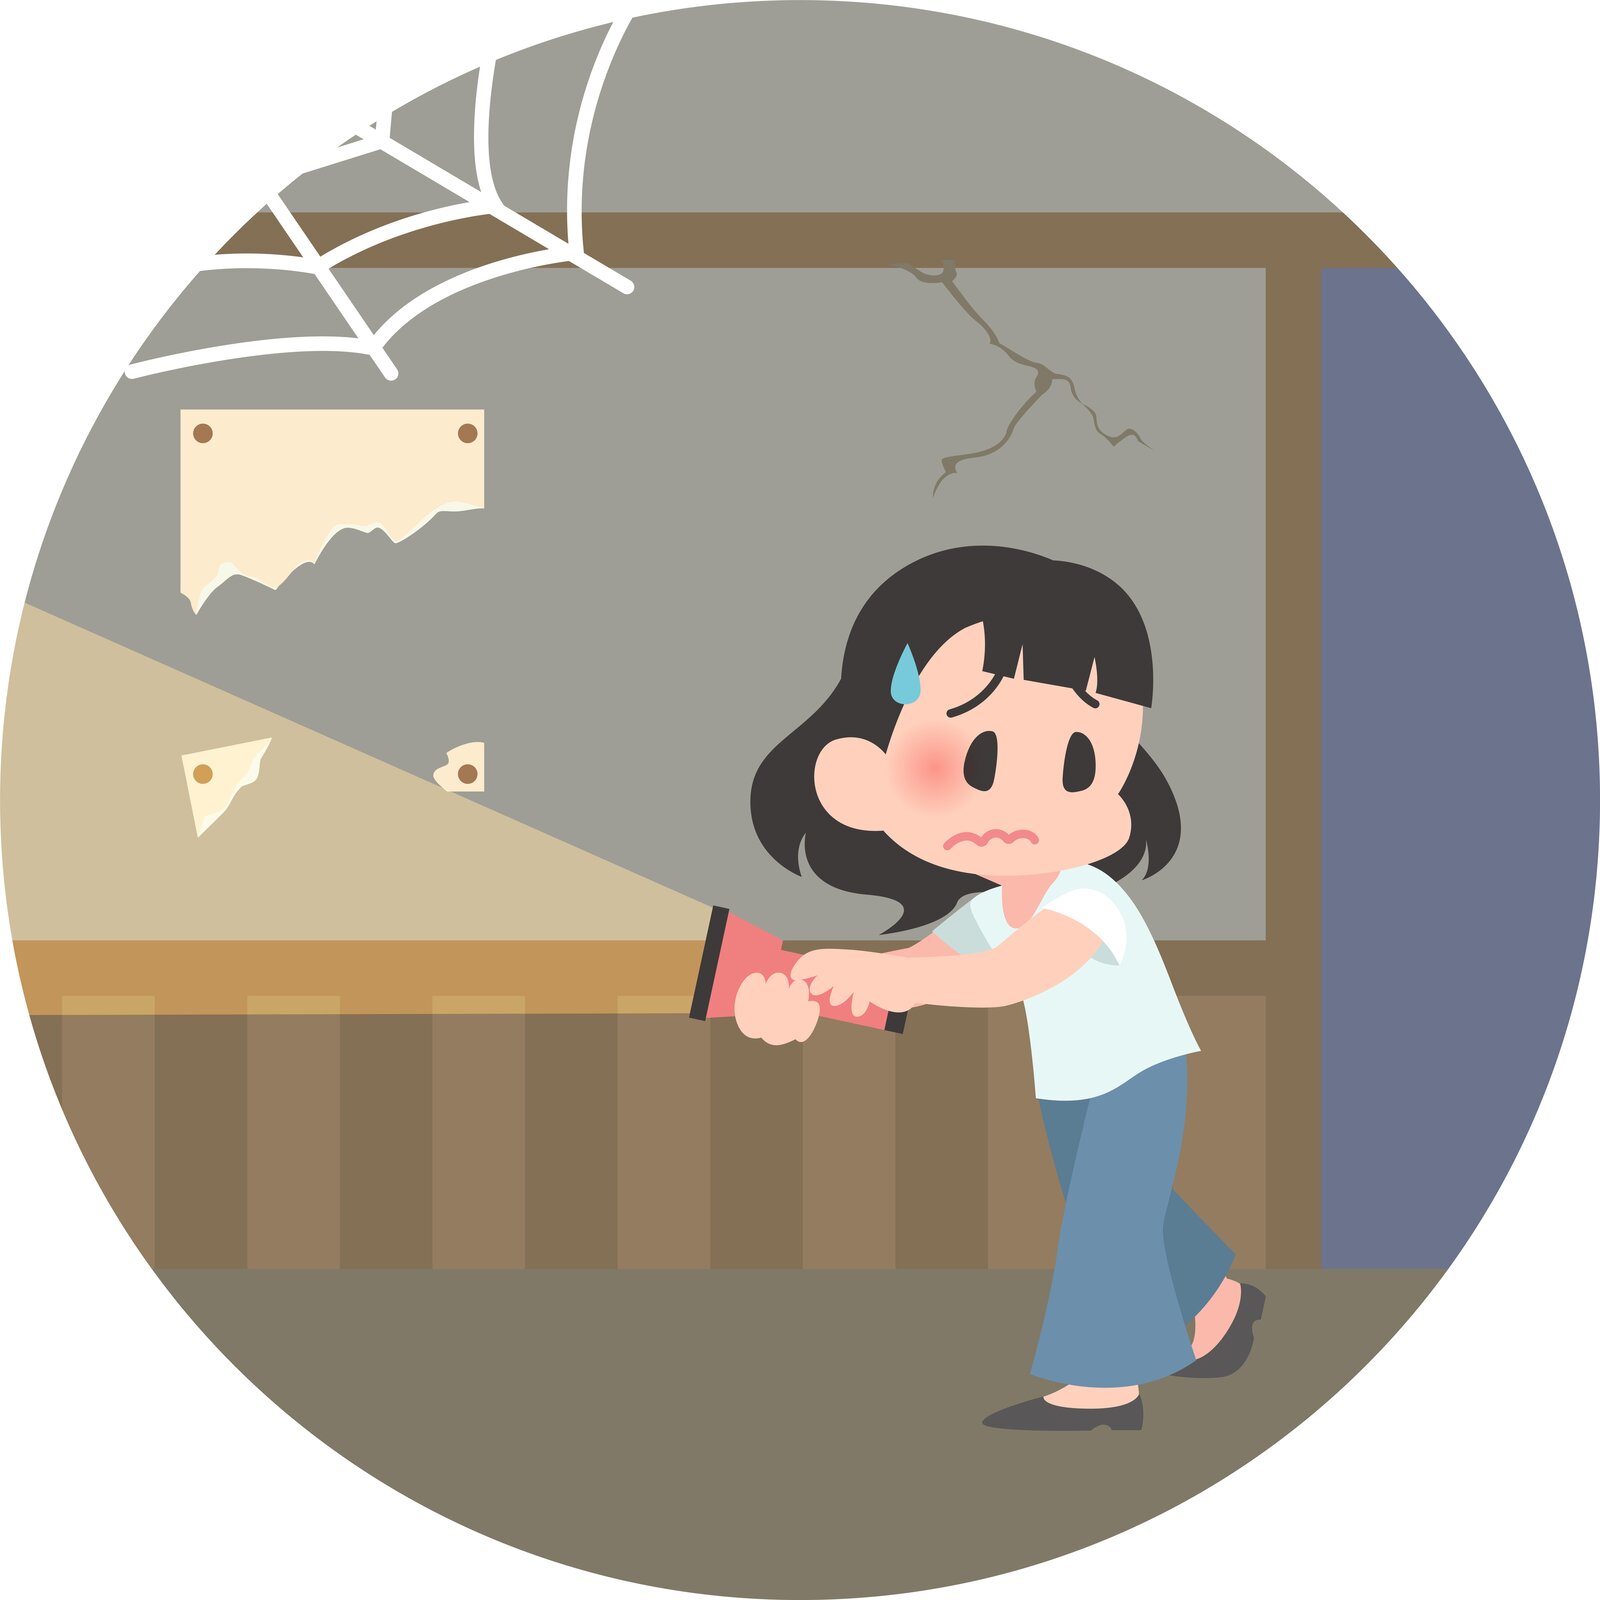 Ilustracja wektorowa przedstawiająca młodą azjatkę, która znajduje się w opuszczonym pomieszczeniu. Na jej twarzy widać niepewność i strach.